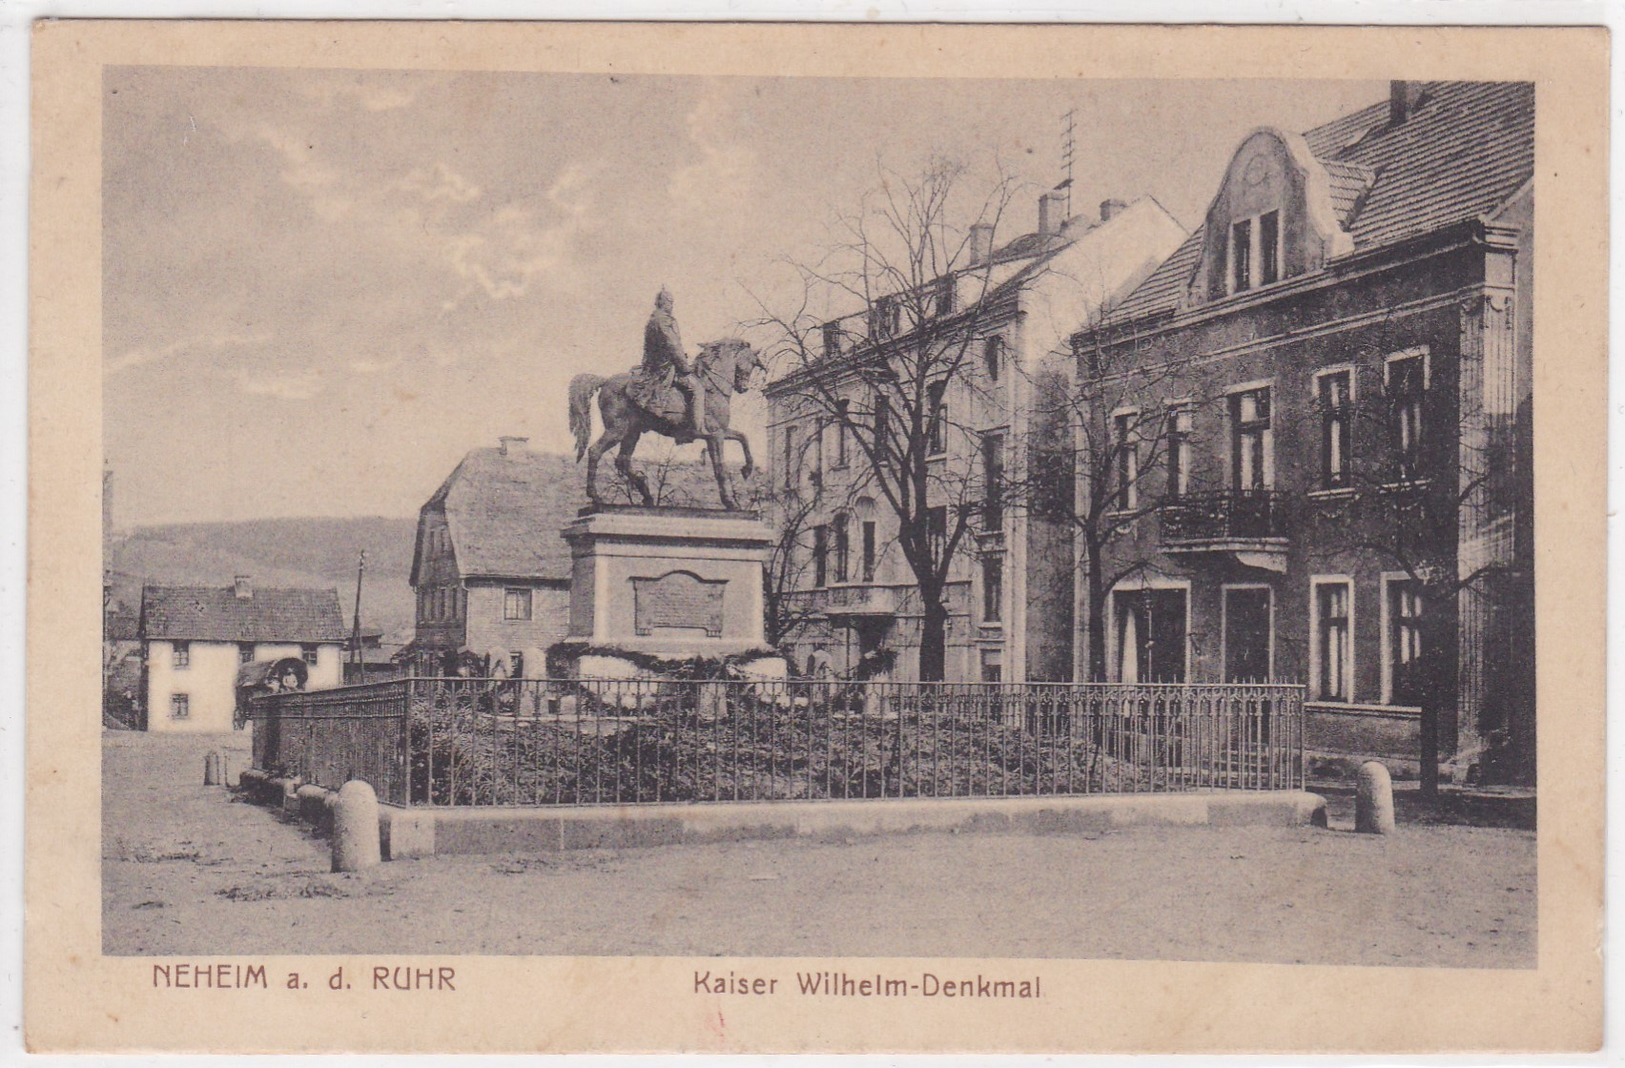 Neheim A. D. Ruhr - Kaiser Wilhelm-Denkmal - Arnsberg